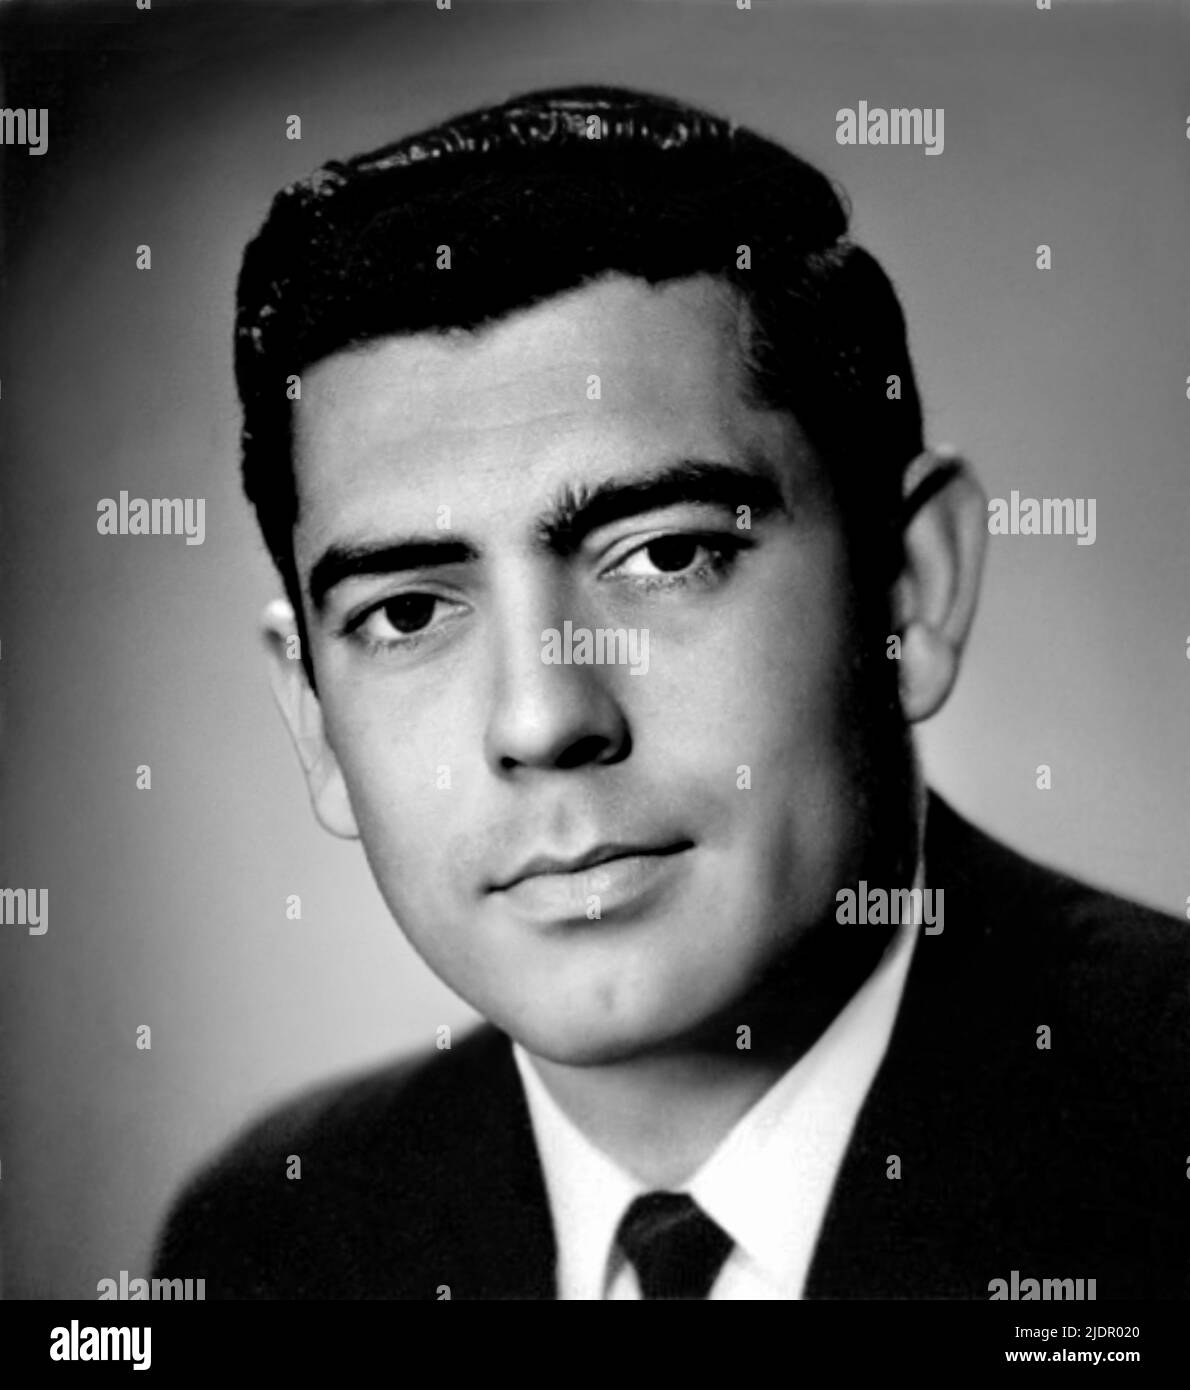 1961 ca , USA : The American television host, national evening news anchor and journalist DAN RATHER ( born 31 october 1931 ), when was young aged 30 . Unknown photographer. - HISTORY - FOTO STORICHE - personalità da giovane giovani - personality personalities when was young - PORTRAIT - RITRATTO - conduttore televisivo - ABC - NBC - presentatore - TV - TELEVISIONE - ANCHOR MAN - MEZZOBUSTO - TELEGIORNALE - TG --- ARCHIVIO GBB Stock Photo